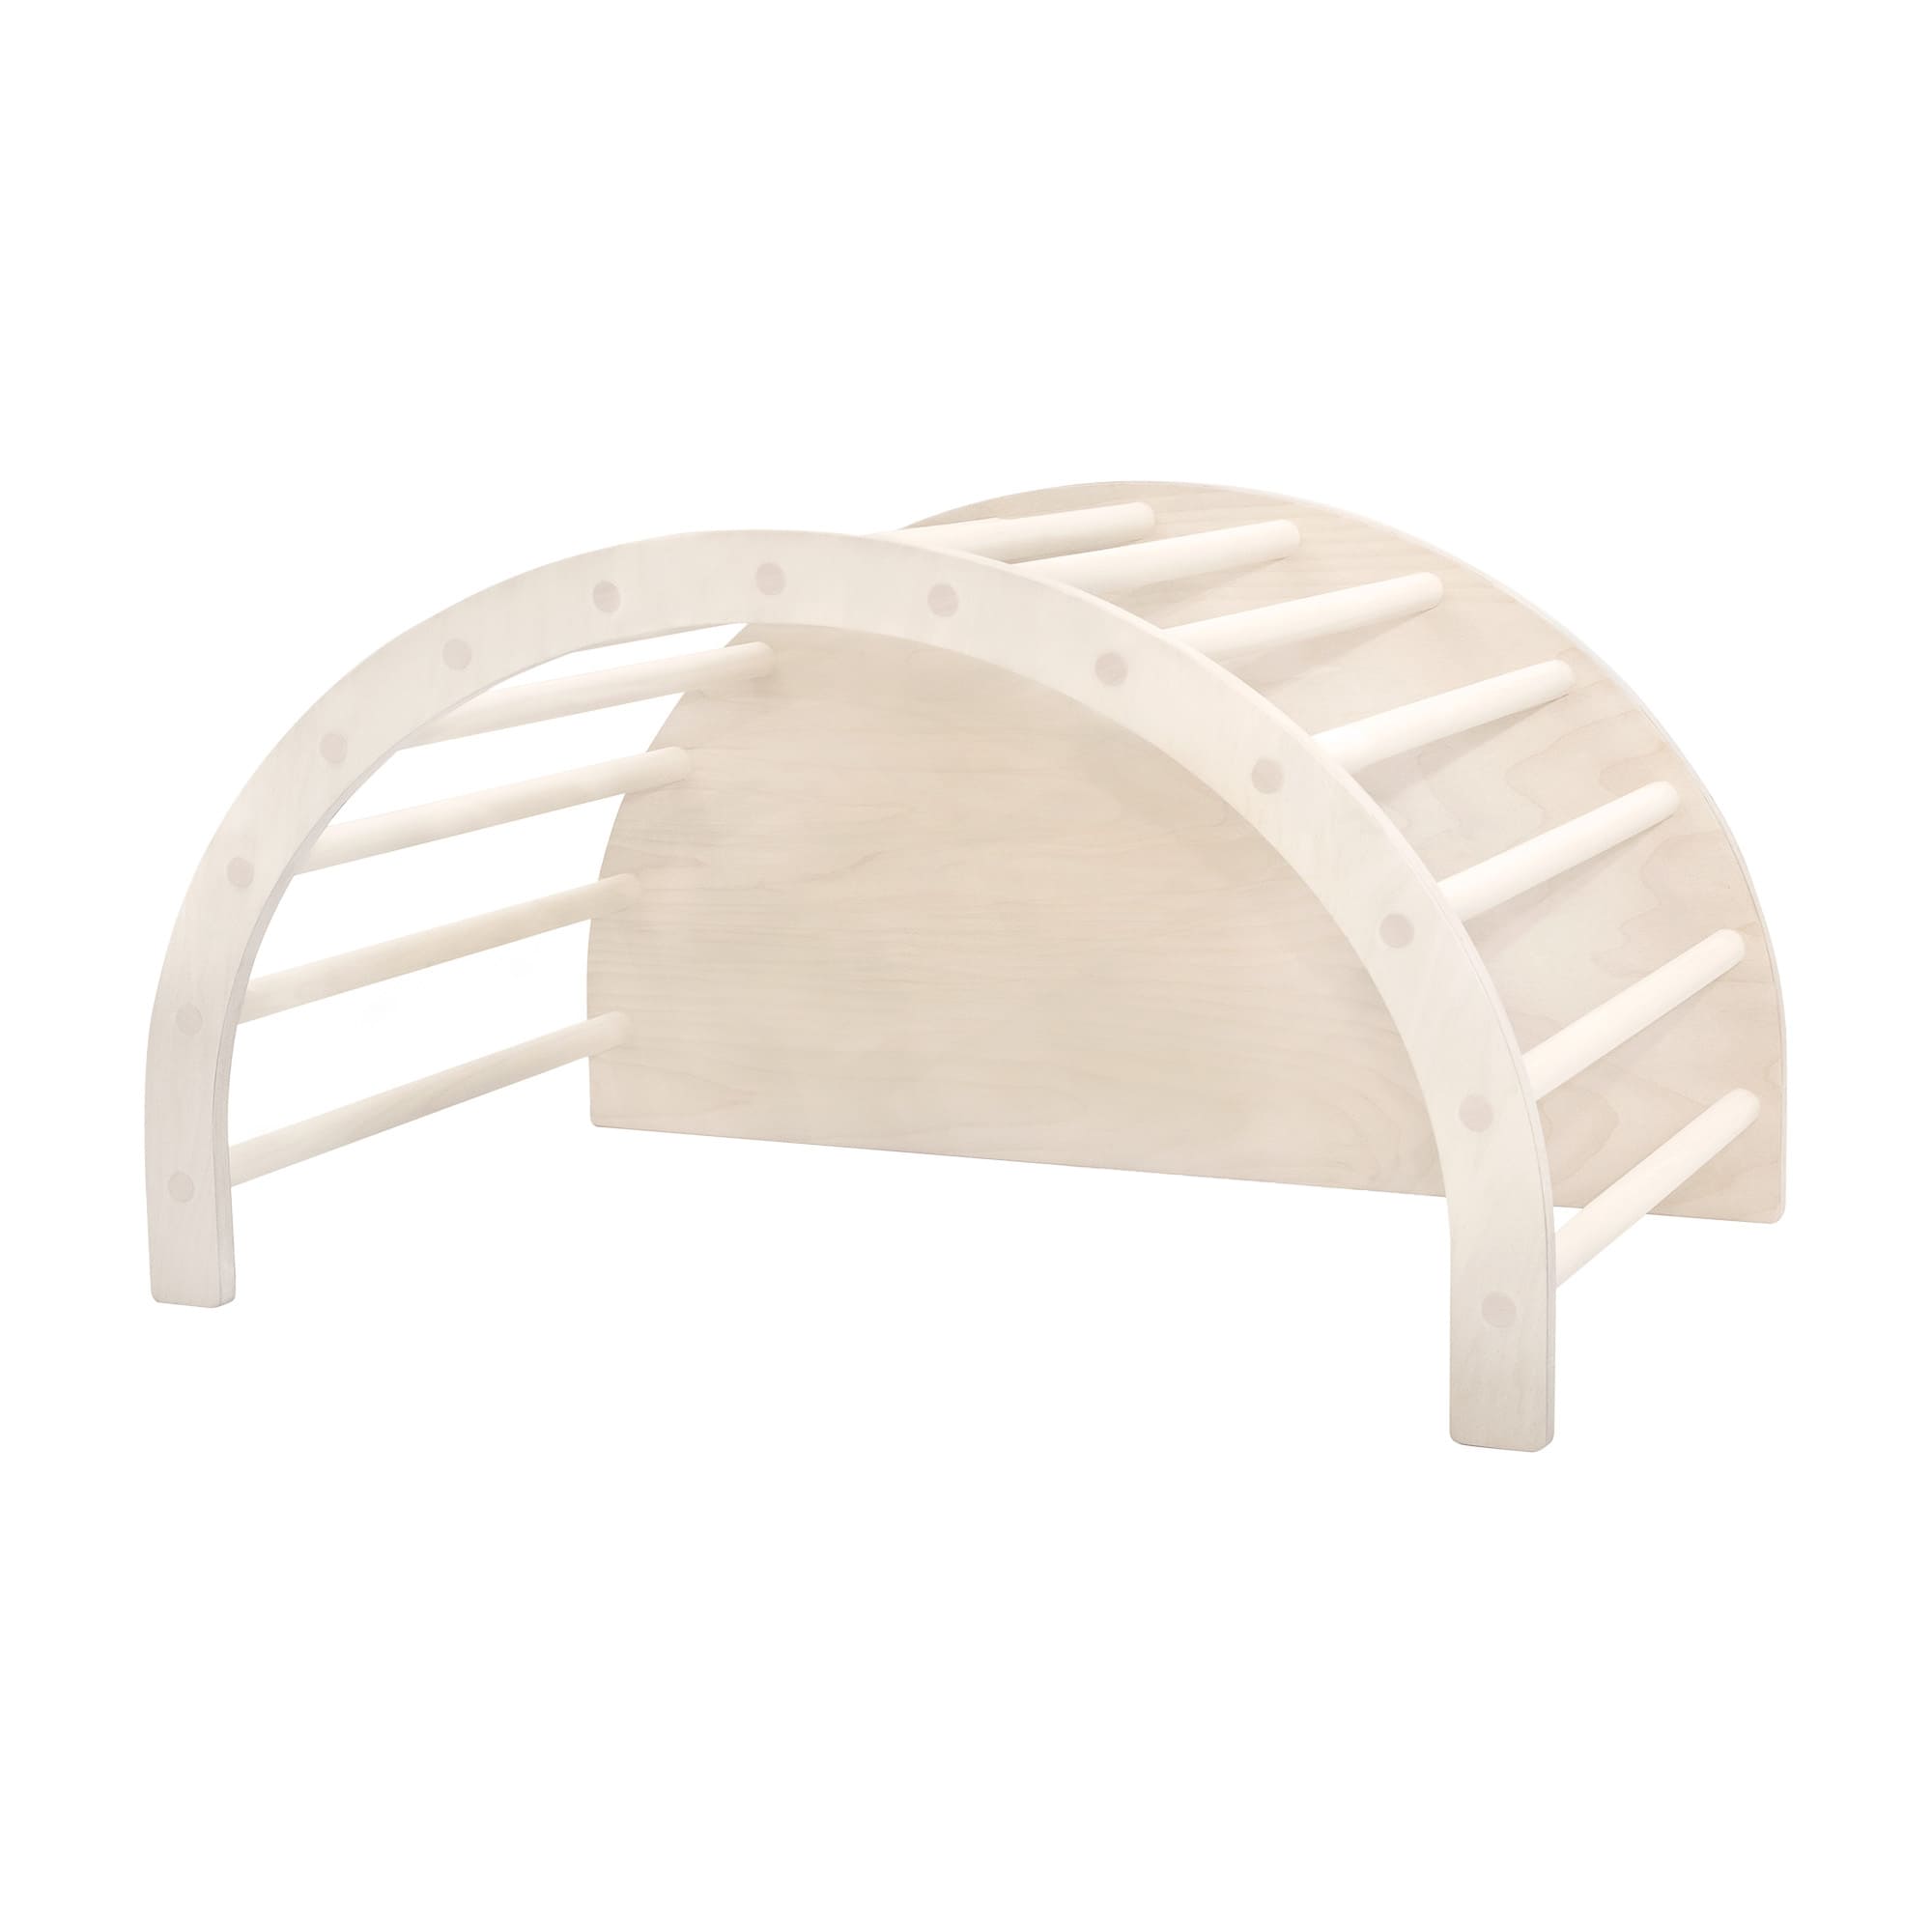 Aire de motricité en bois pour enfant – Kit complet (Arche +